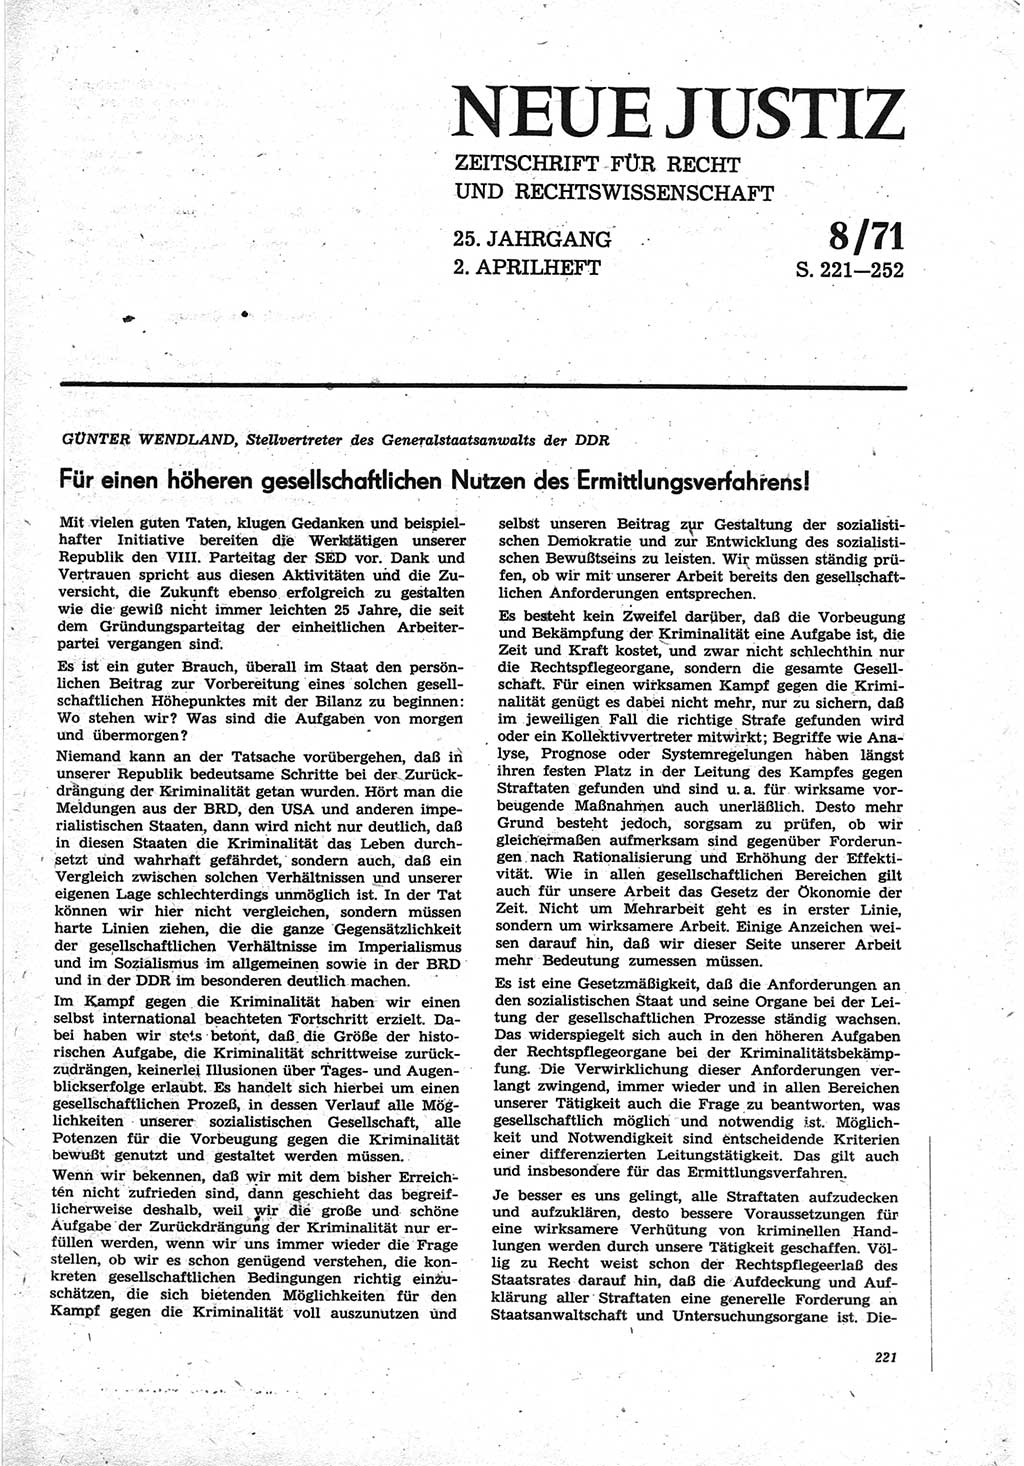 Neue Justiz (NJ), Zeitschrift für Recht und Rechtswissenschaft [Deutsche Demokratische Republik (DDR)], 25. Jahrgang 1971, Seite 221 (NJ DDR 1971, S. 221)